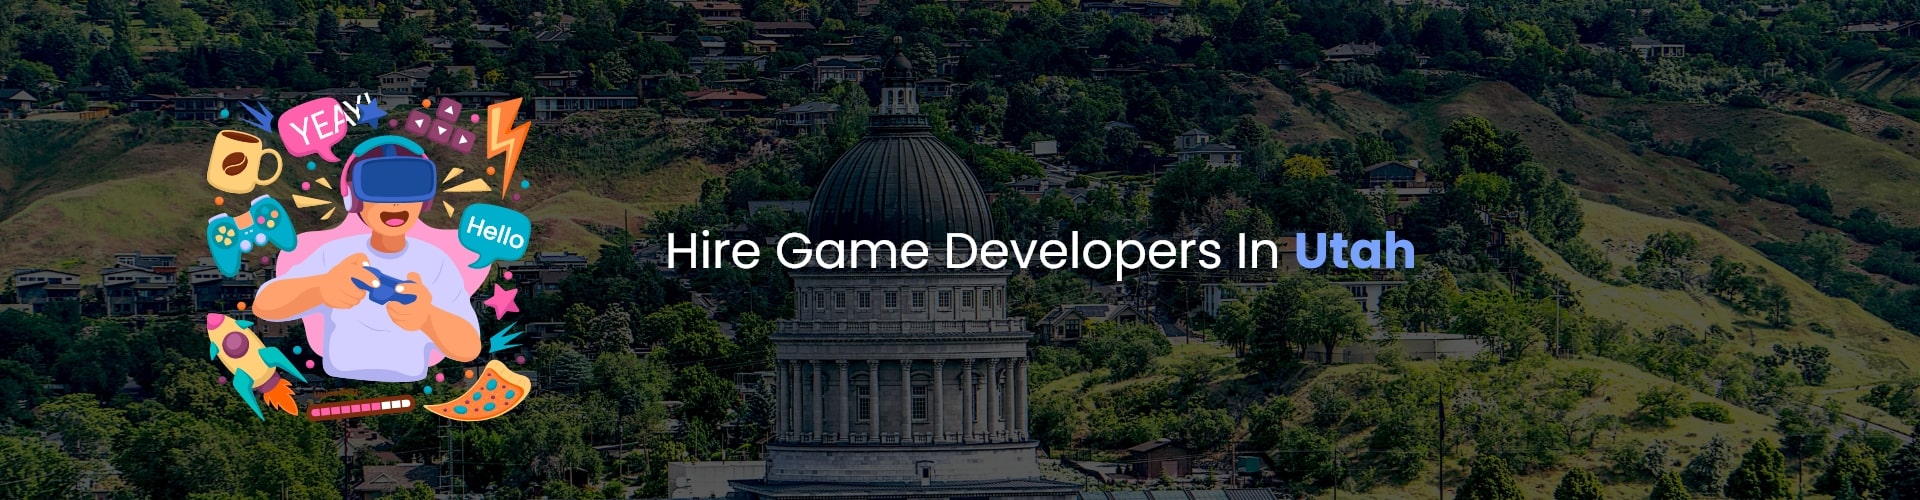 hire game developers in utah